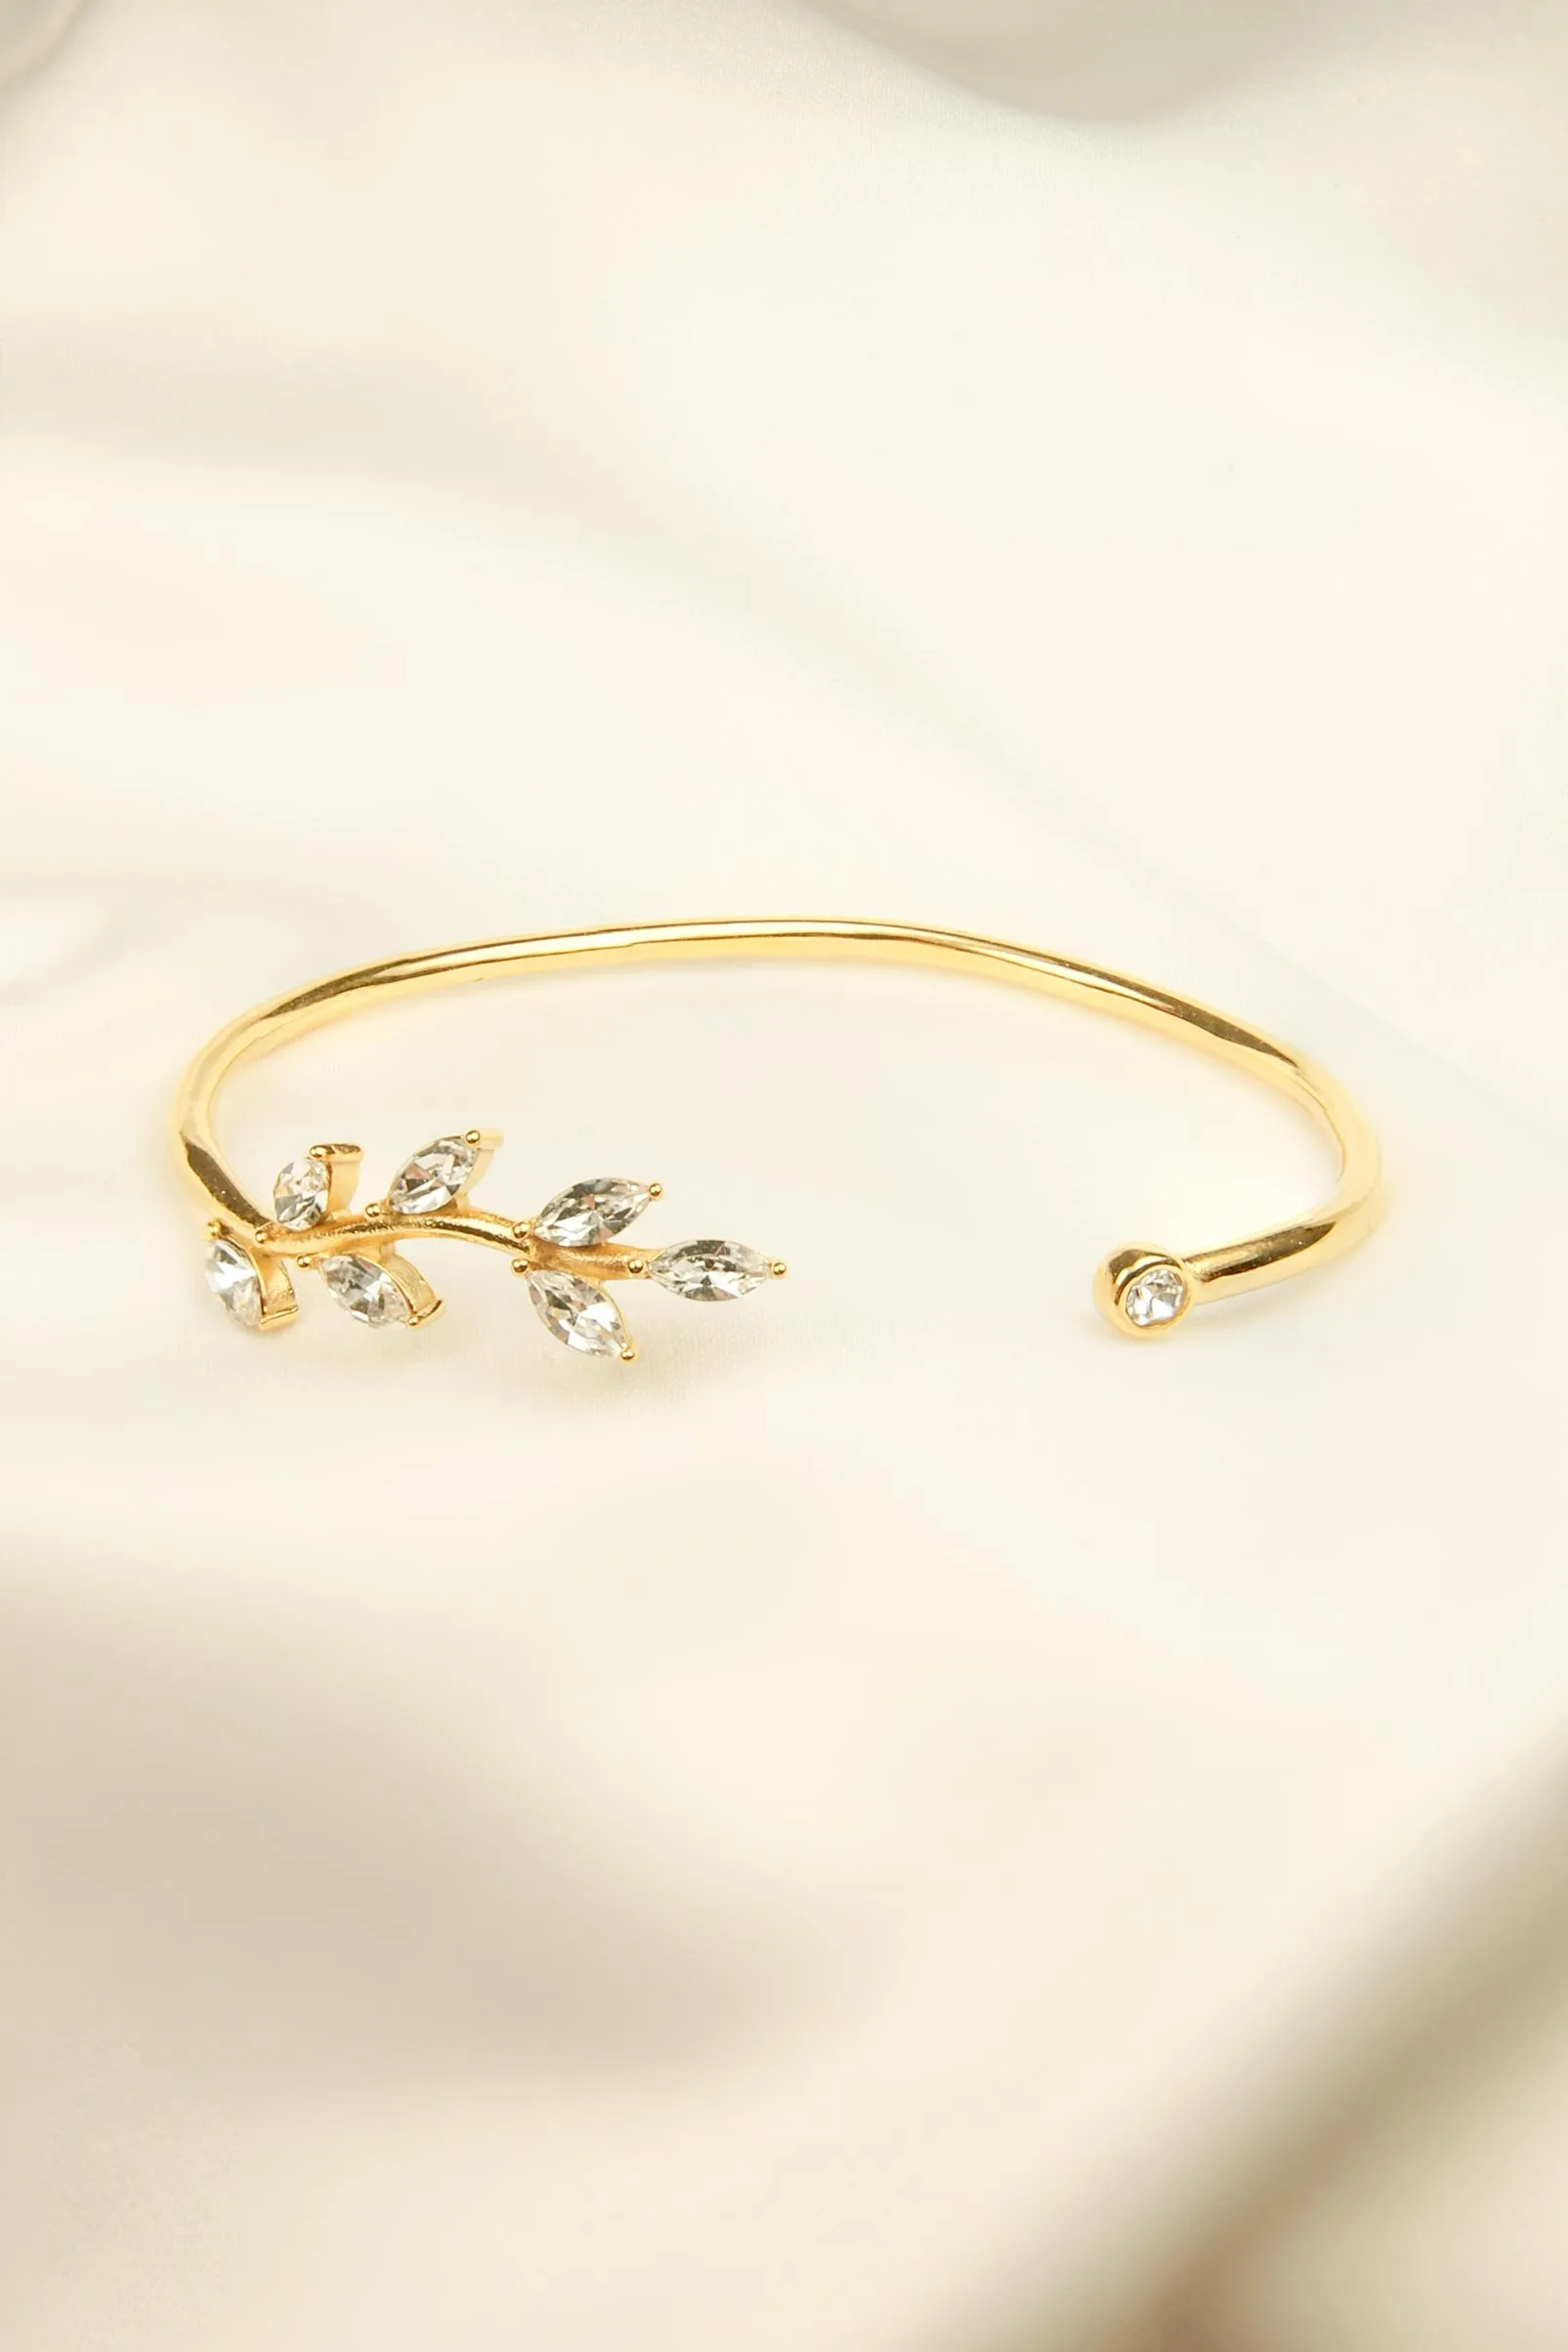 Bracelet Glory blanc. Bracelet ajustable doré et en acier inoxydable, en forme de feuille de laurier et orné de zircons blancs.